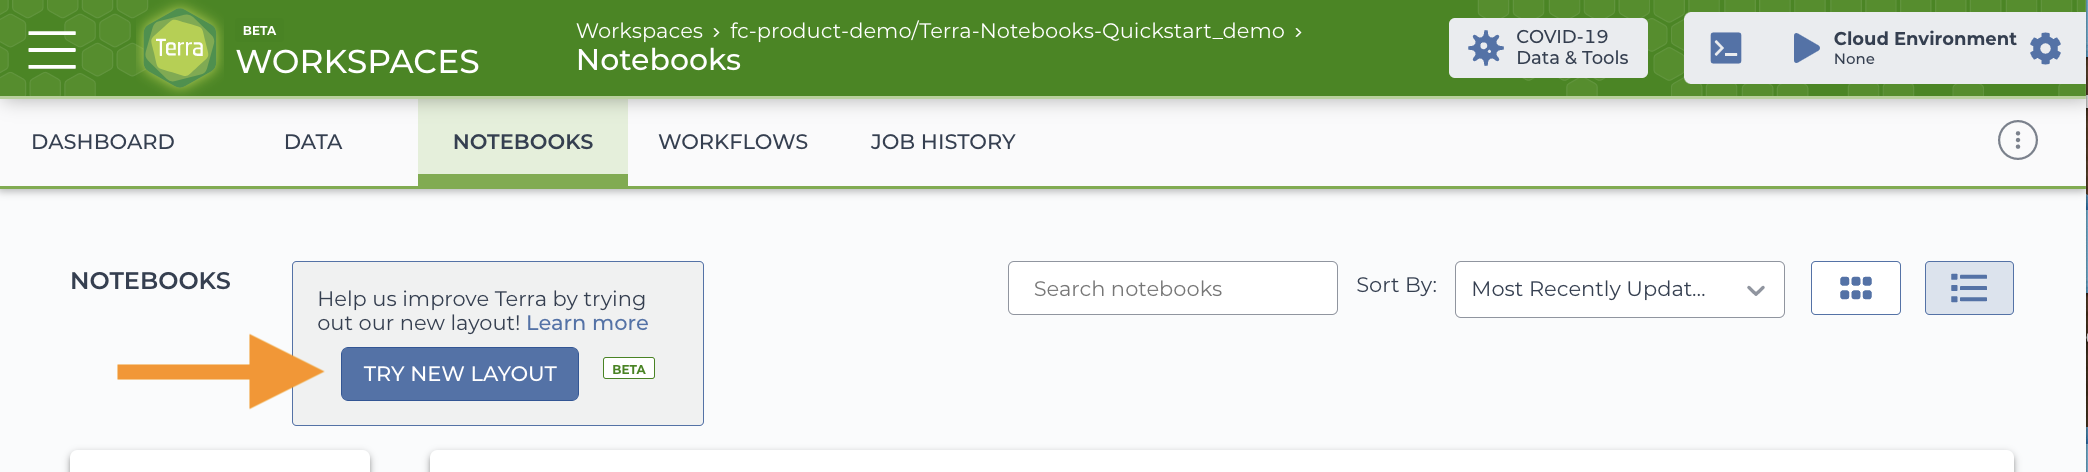 Notebooks-Quickstart_Try-new-layout_Screen_shot.png